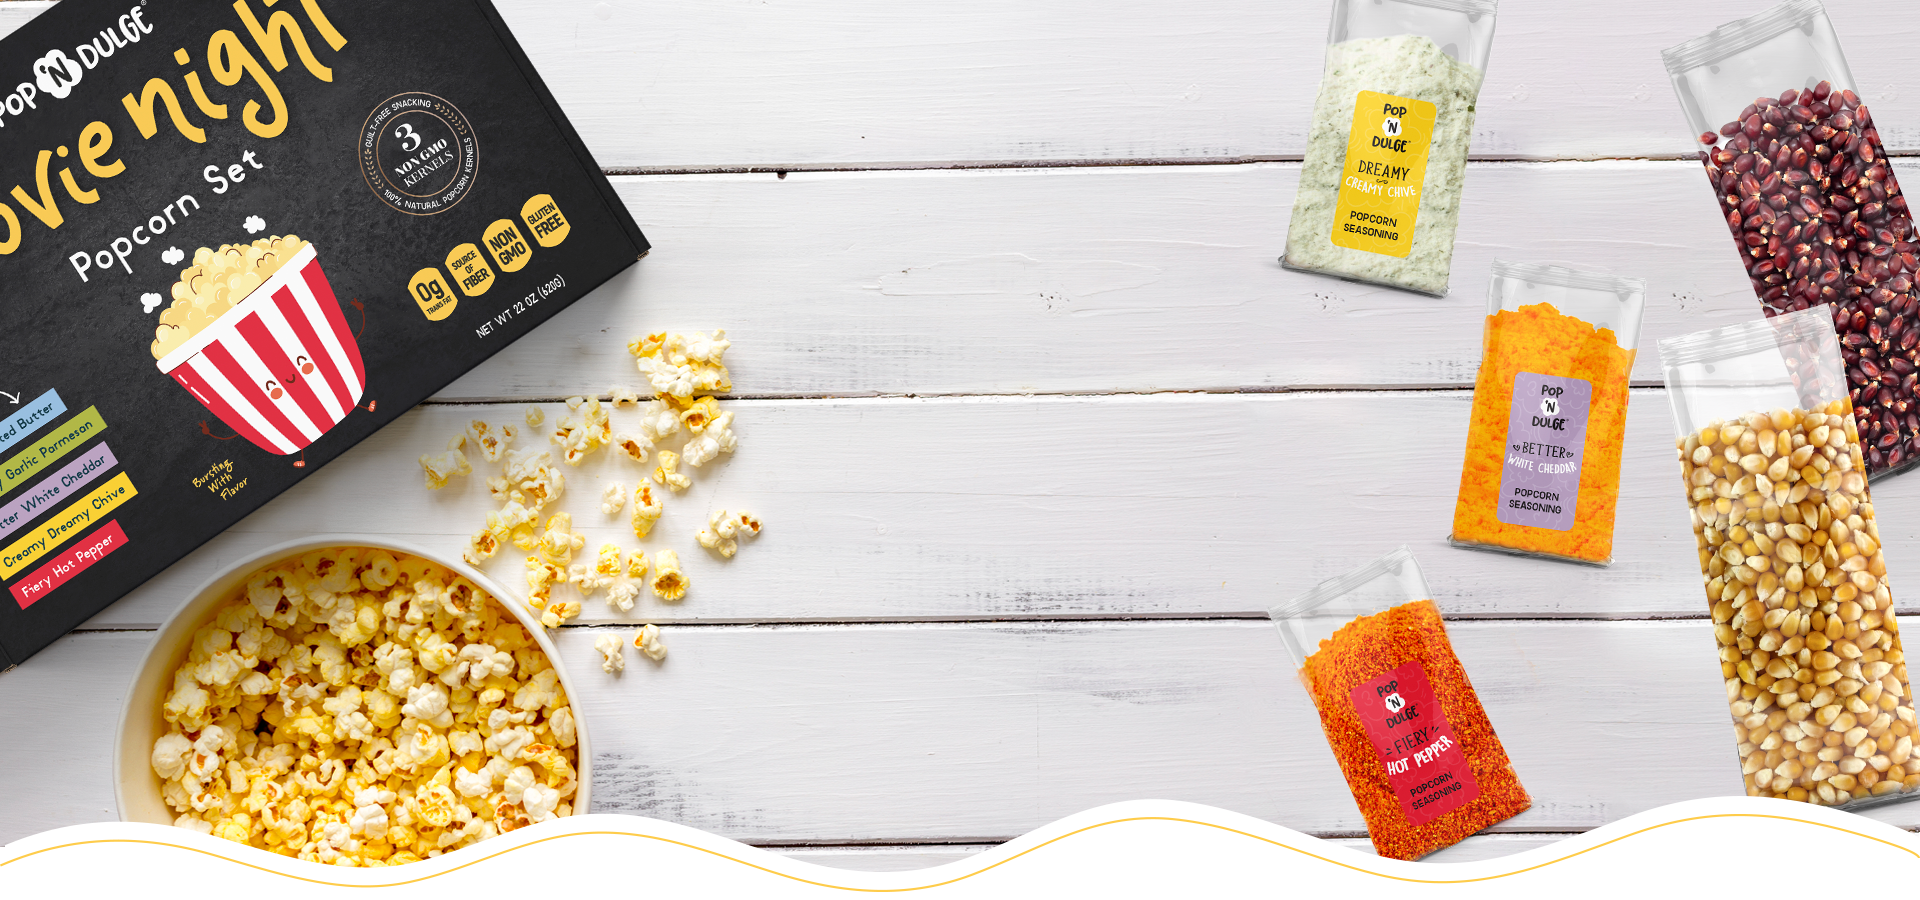 Gold Medal Mega Pop Popcorn Kit 8 oz produce Butter like Flavored Popcorn  OU Kosher (4)